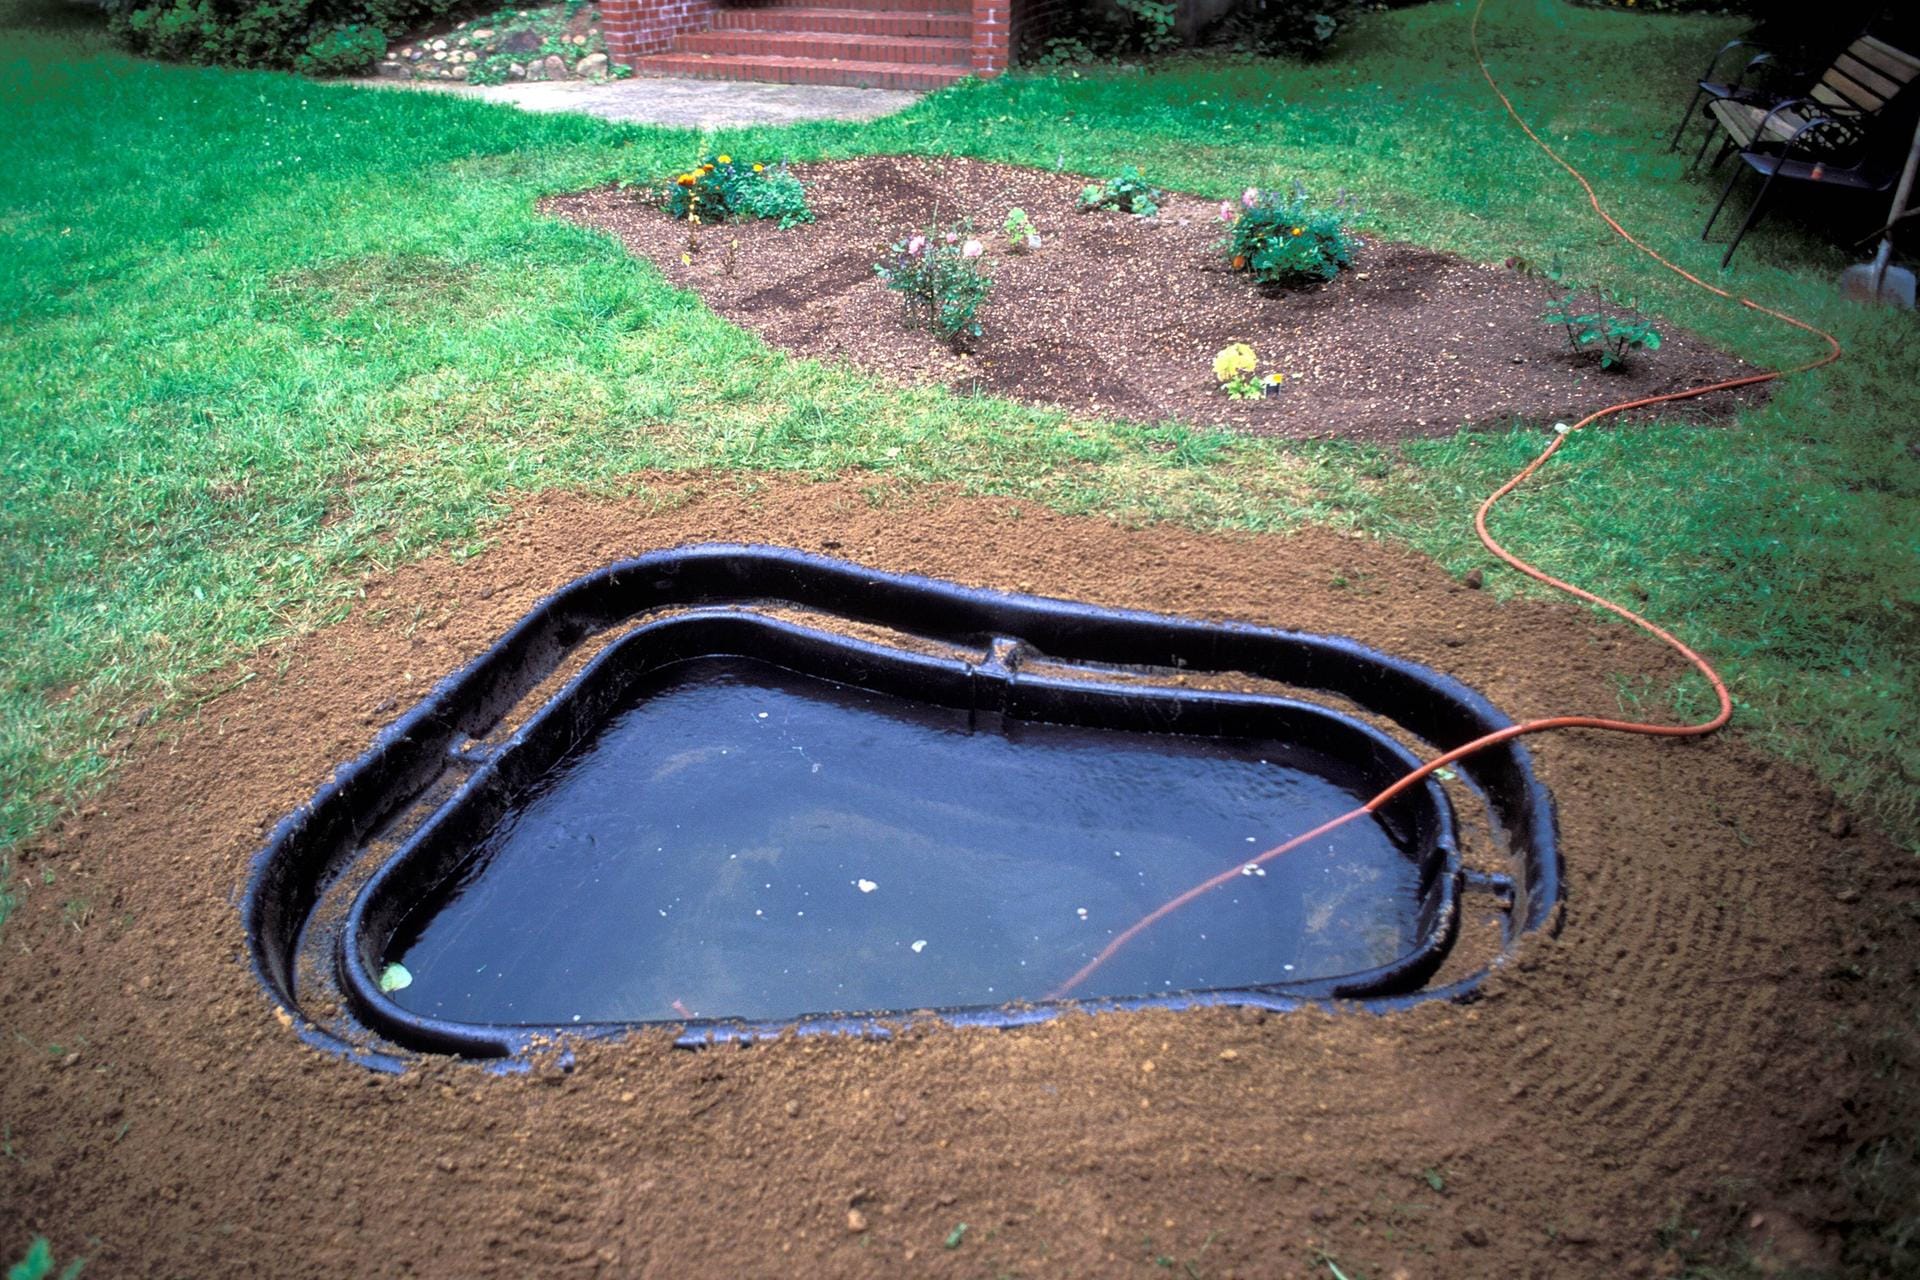 Anlegen eines Fertig-Gartenteiches: Schließlich wird das Wasser ins Teichbecken eingefüllt und der Gartenteich kann bepflanzt werden.